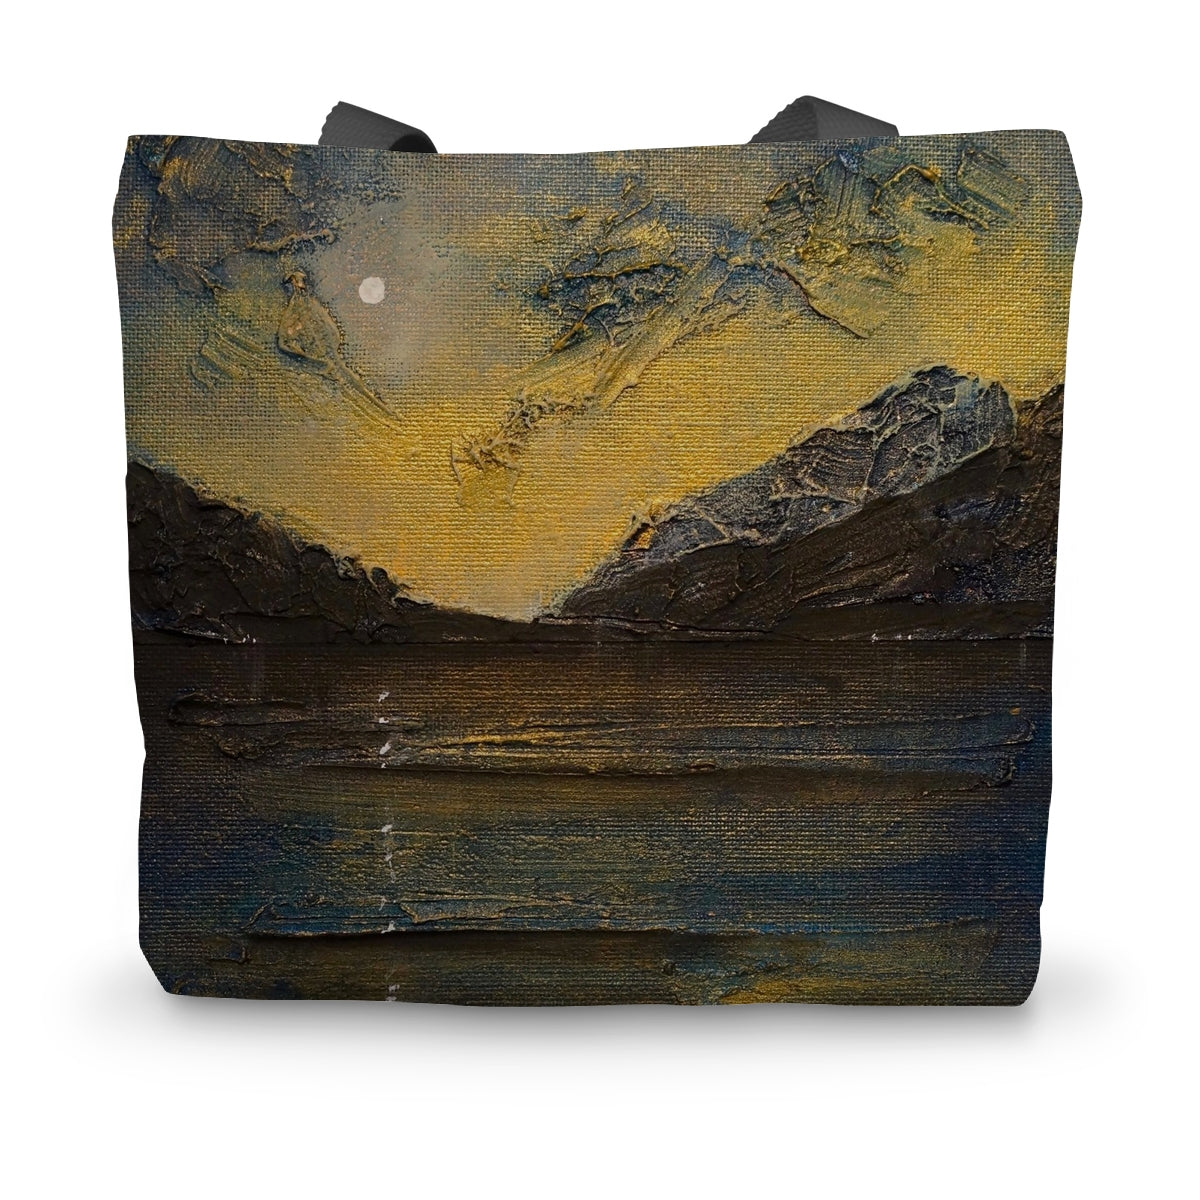 Loch Lomond Moonlight Art Gifts Canvas Tote Bag